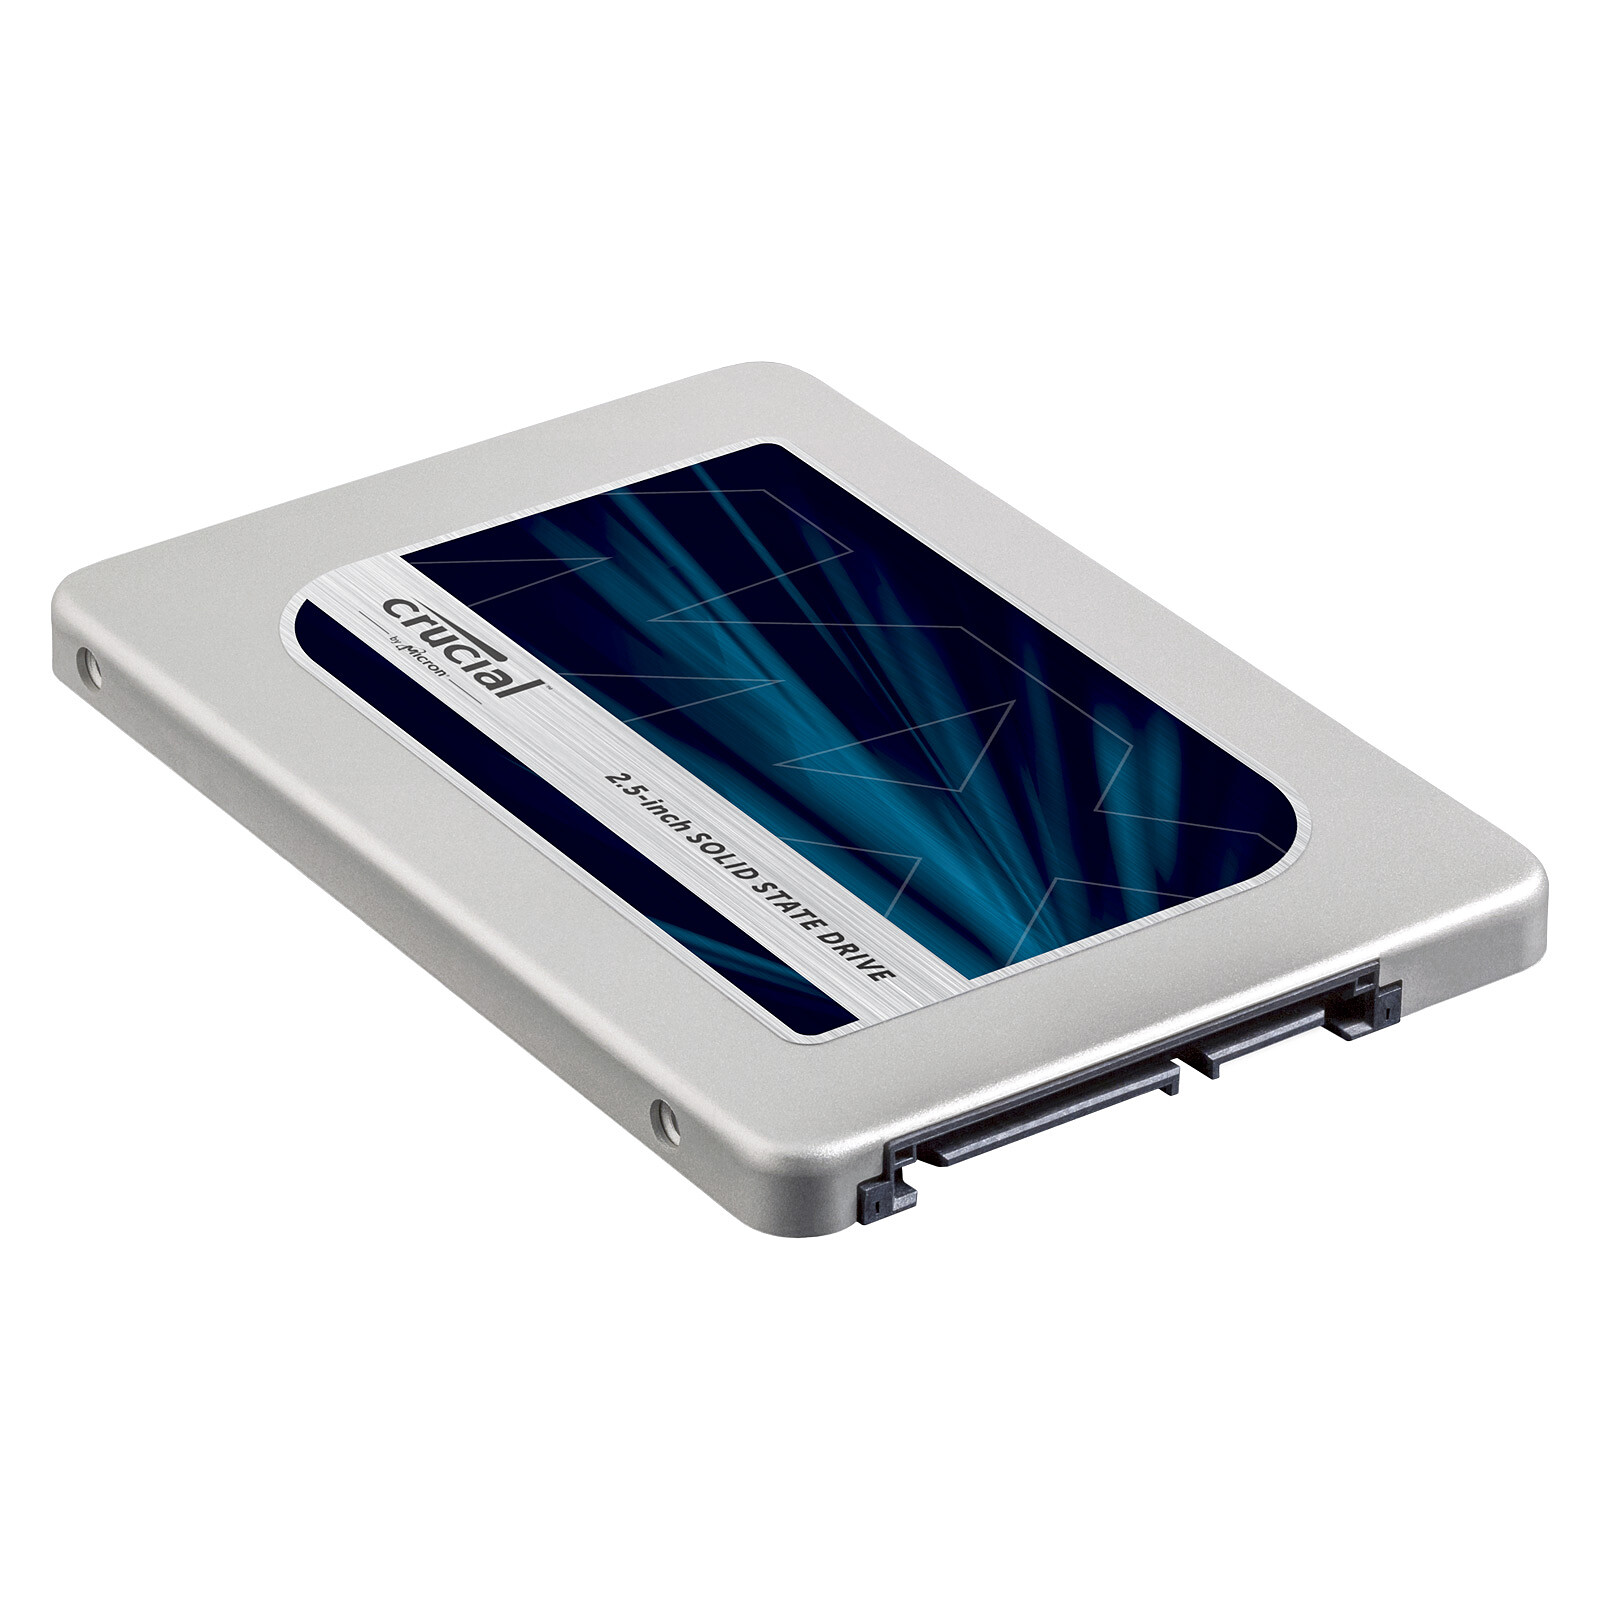 Crucial MX500 250 GB - SSD - LDLC 3-year warranty